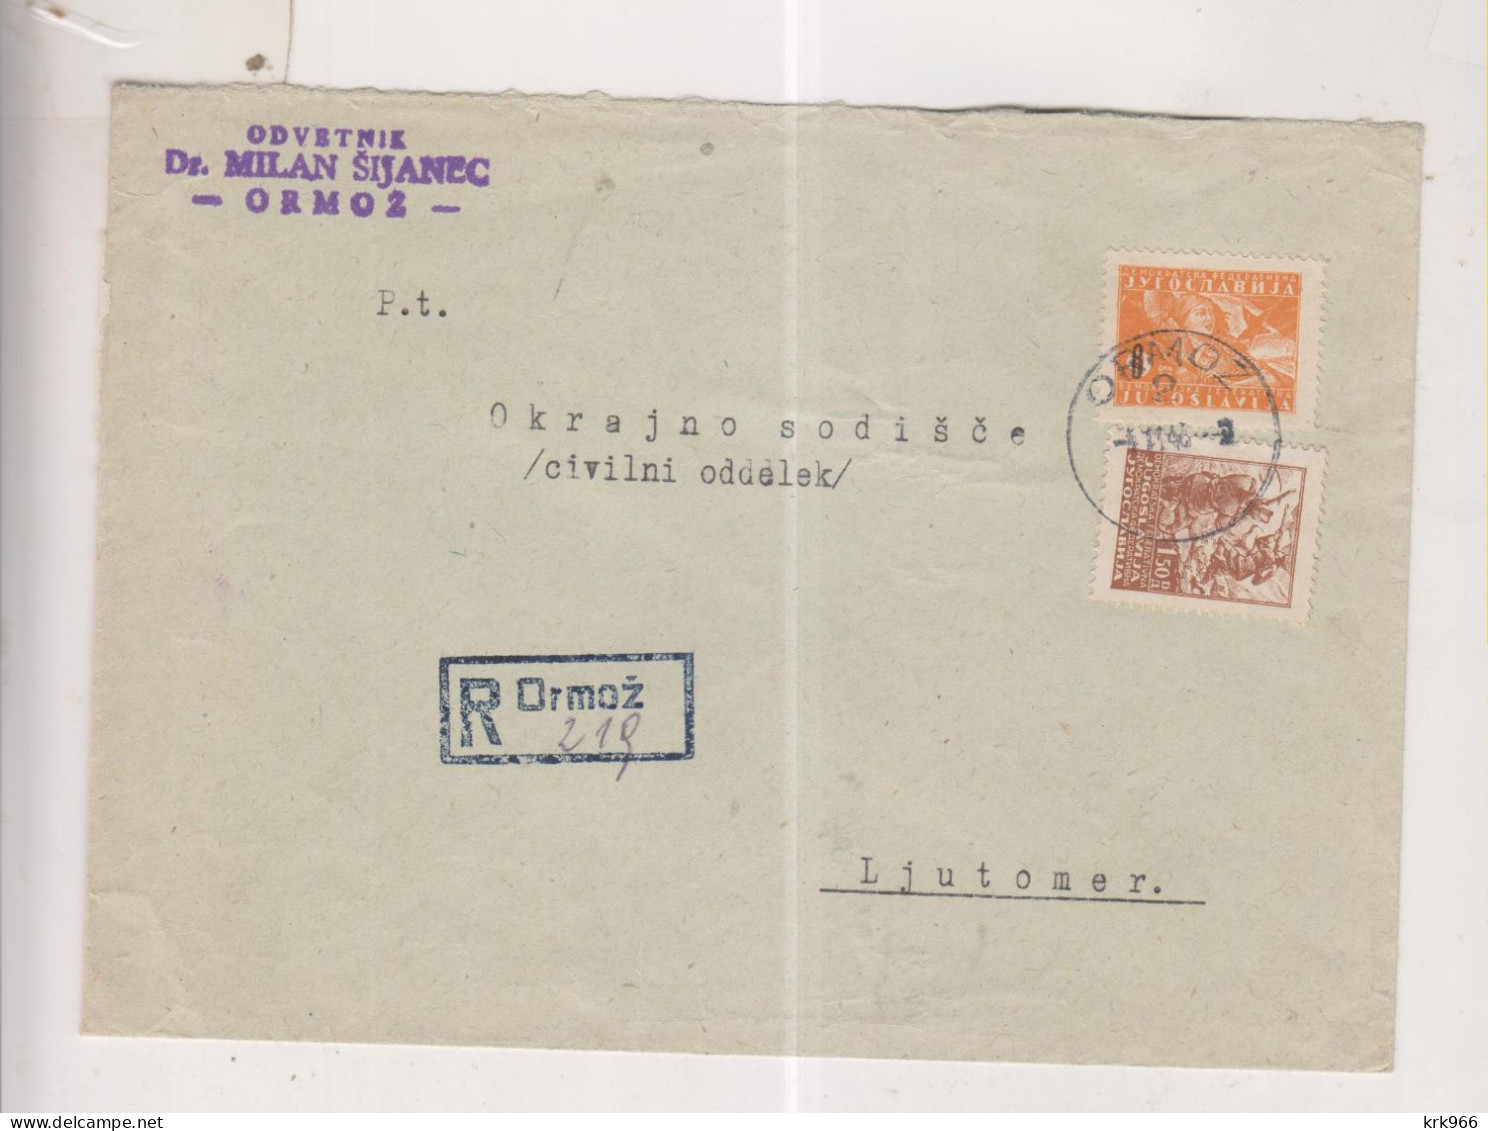 YUGOSLAVIA,1946 ORMOZ Inice Registered Cover - Briefe U. Dokumente